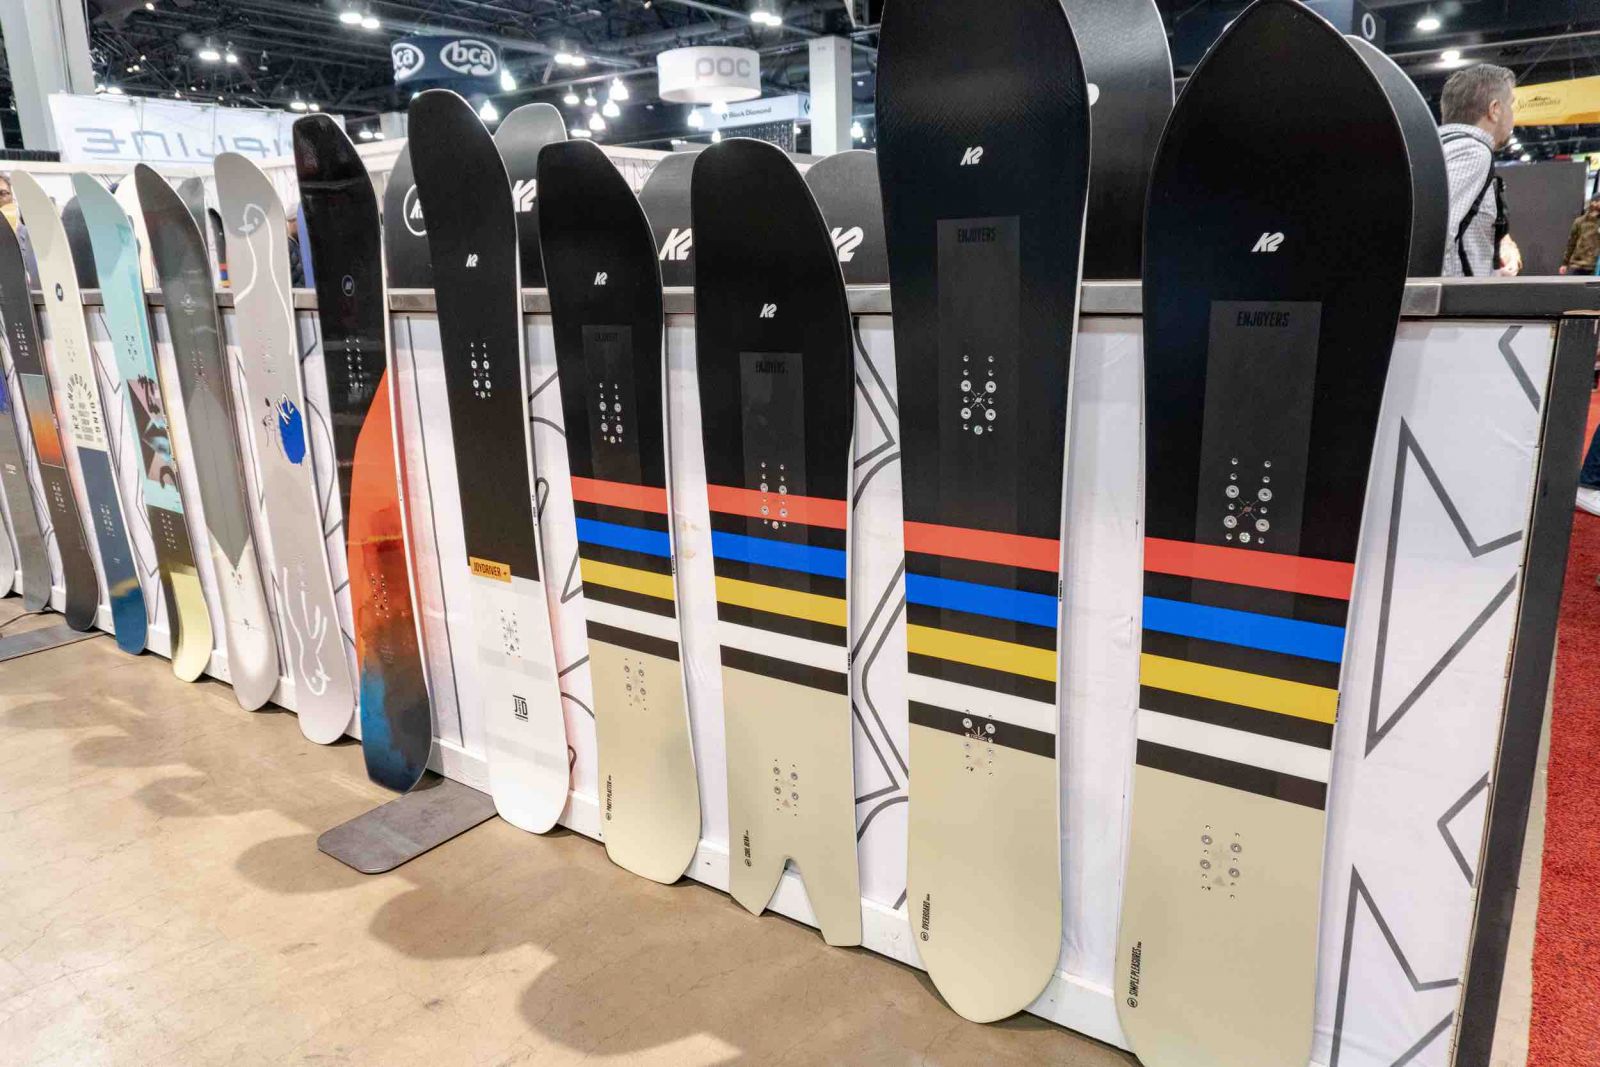 K2-snowboards-2020-tsm